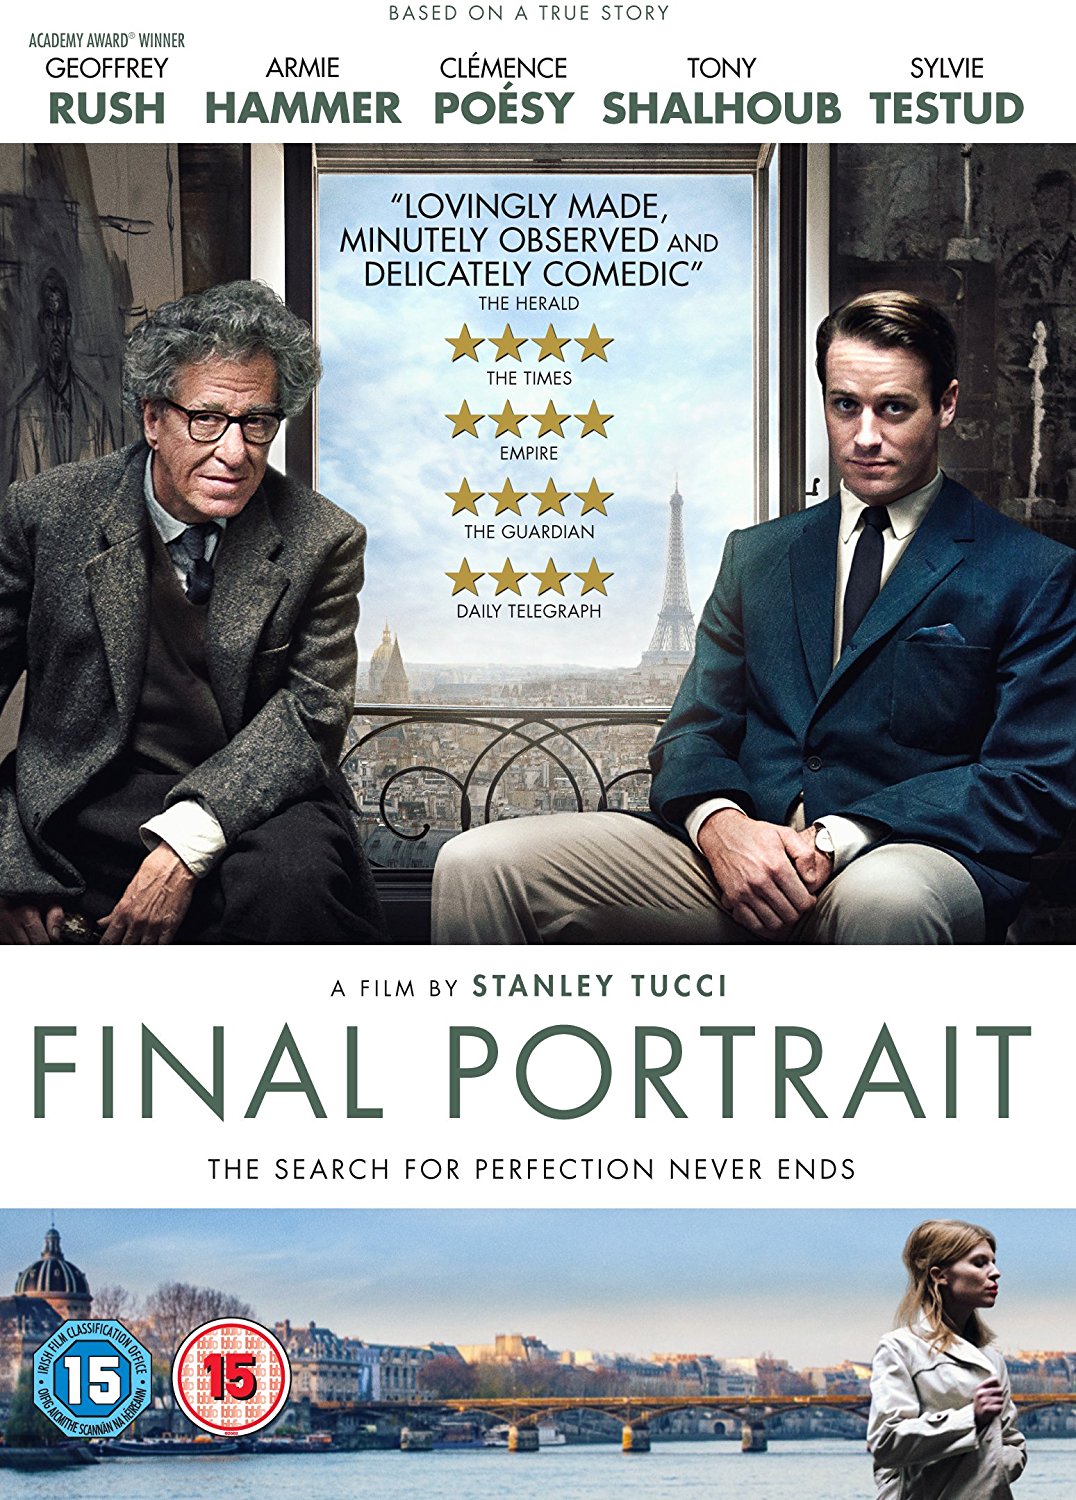 Final Portrait DVD review